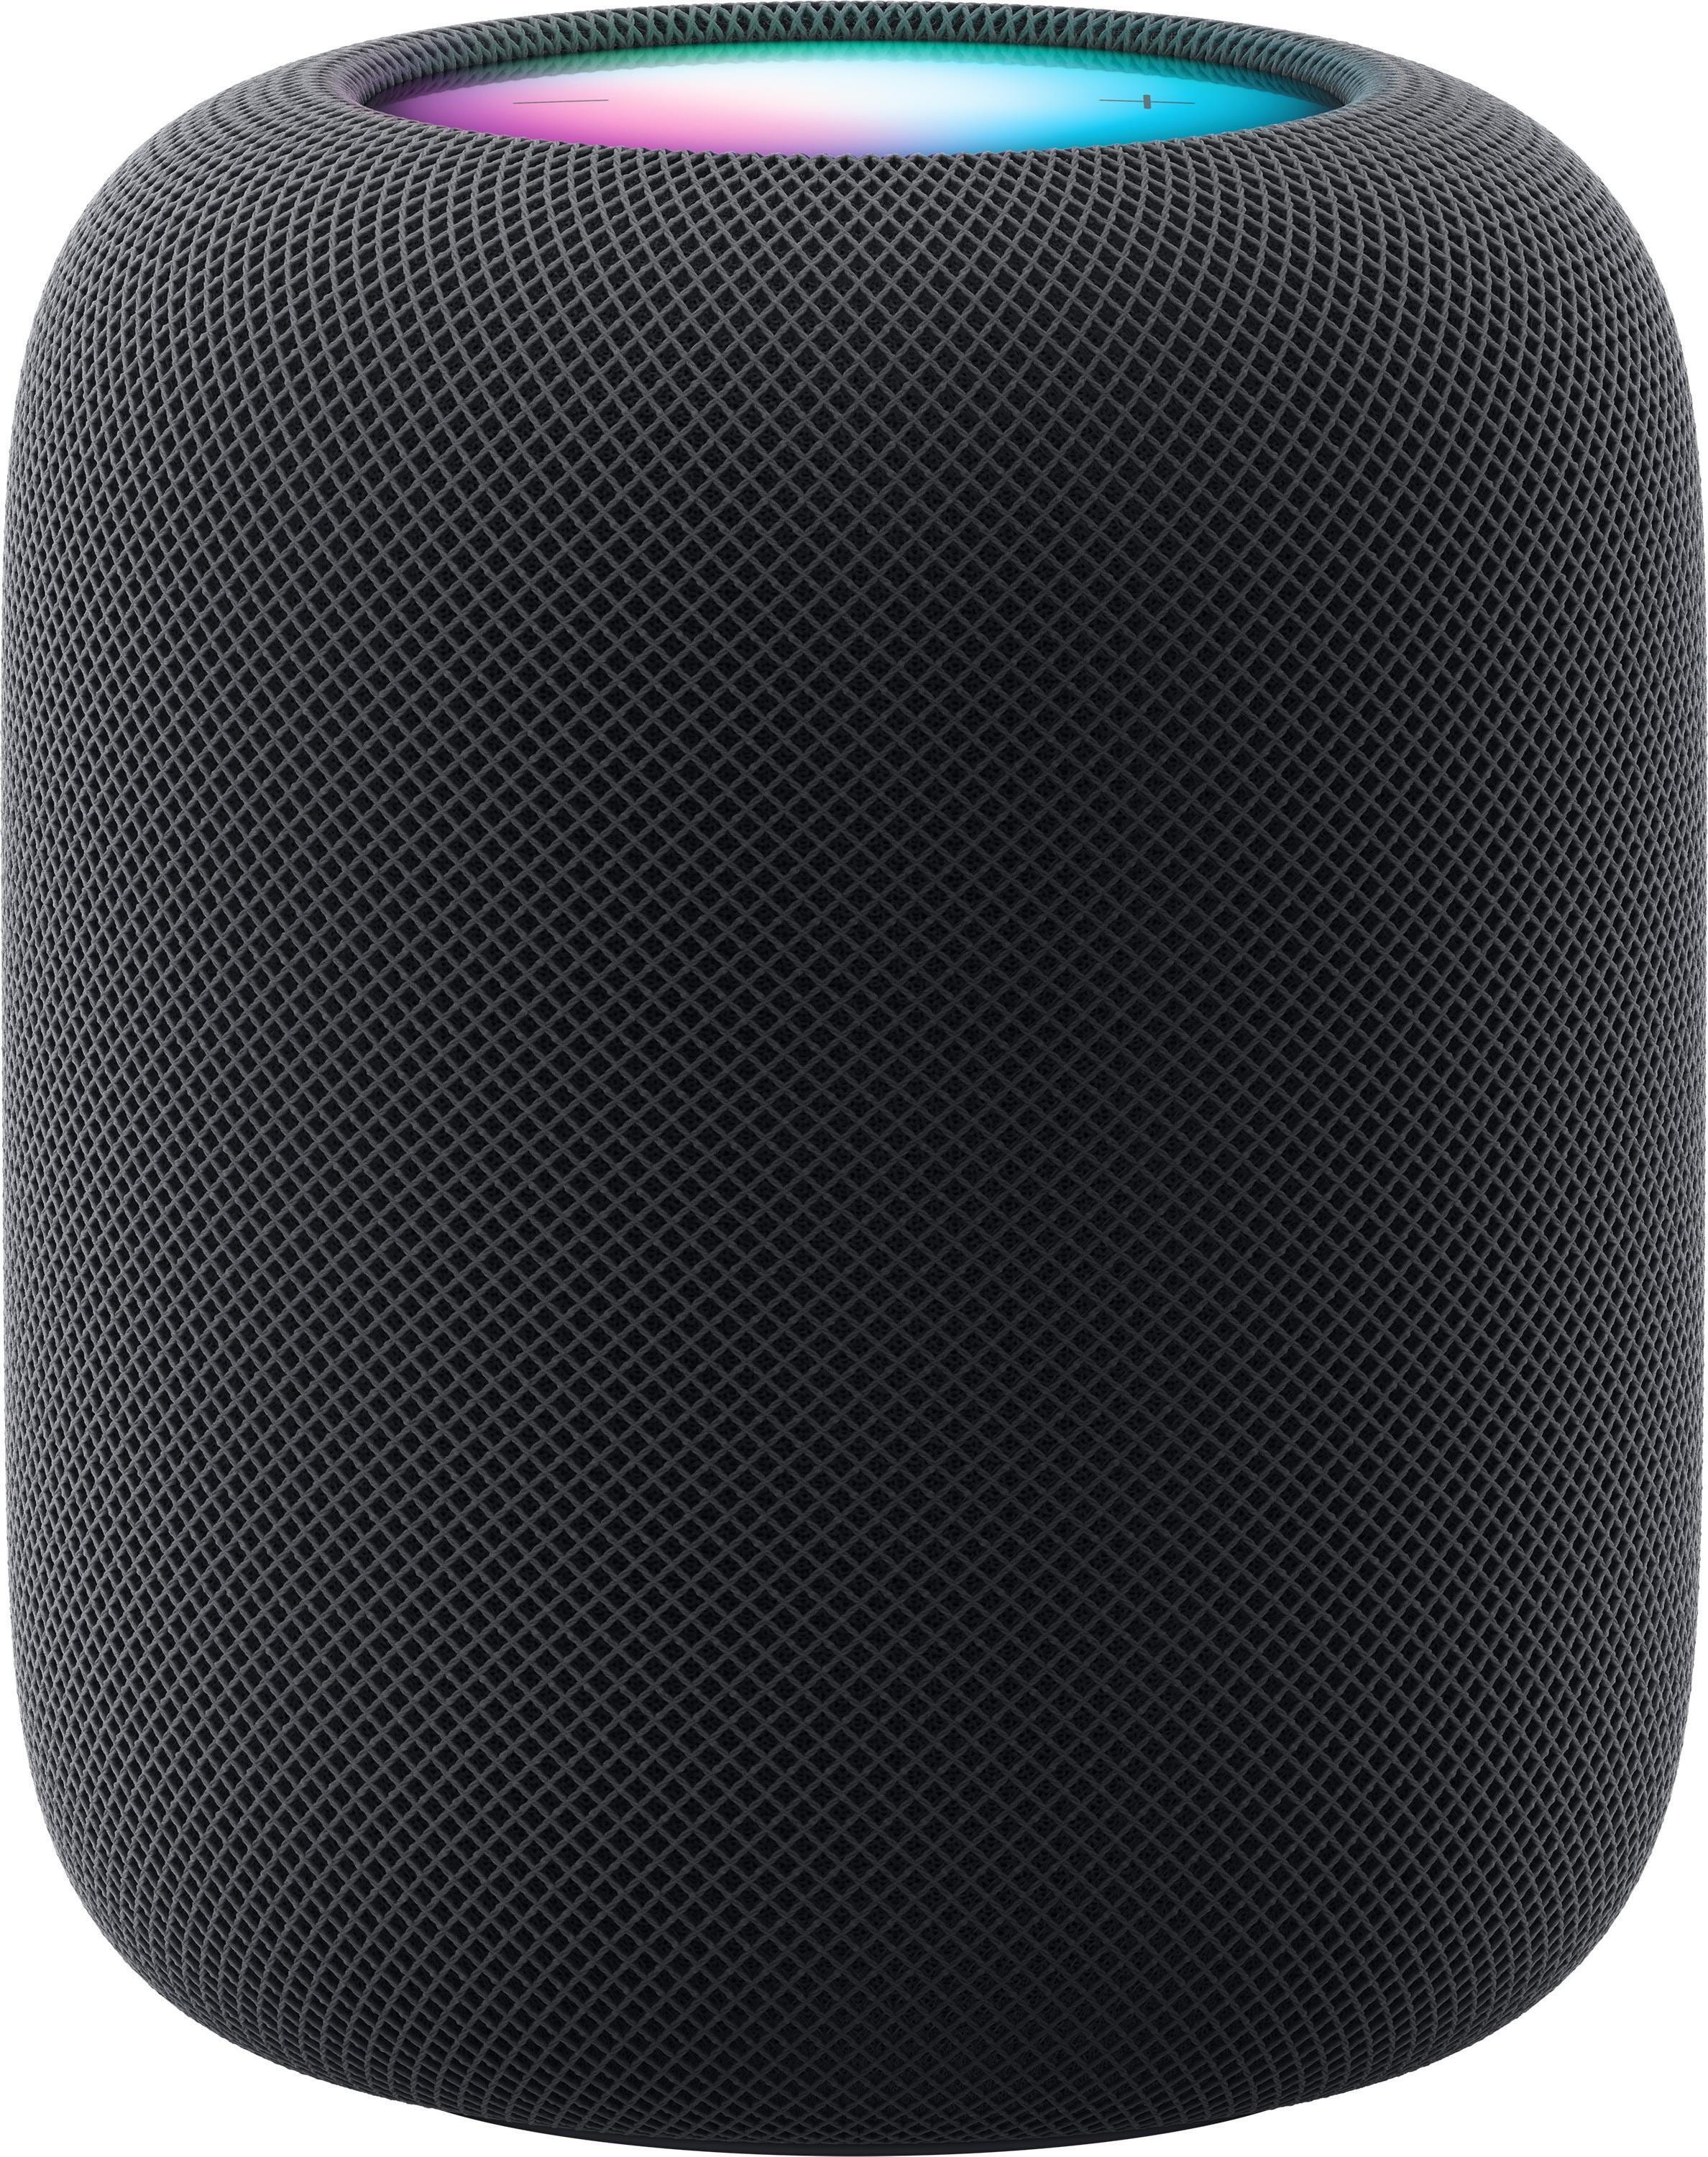 Apple HomePod High Fidelity Speaker - Midnight